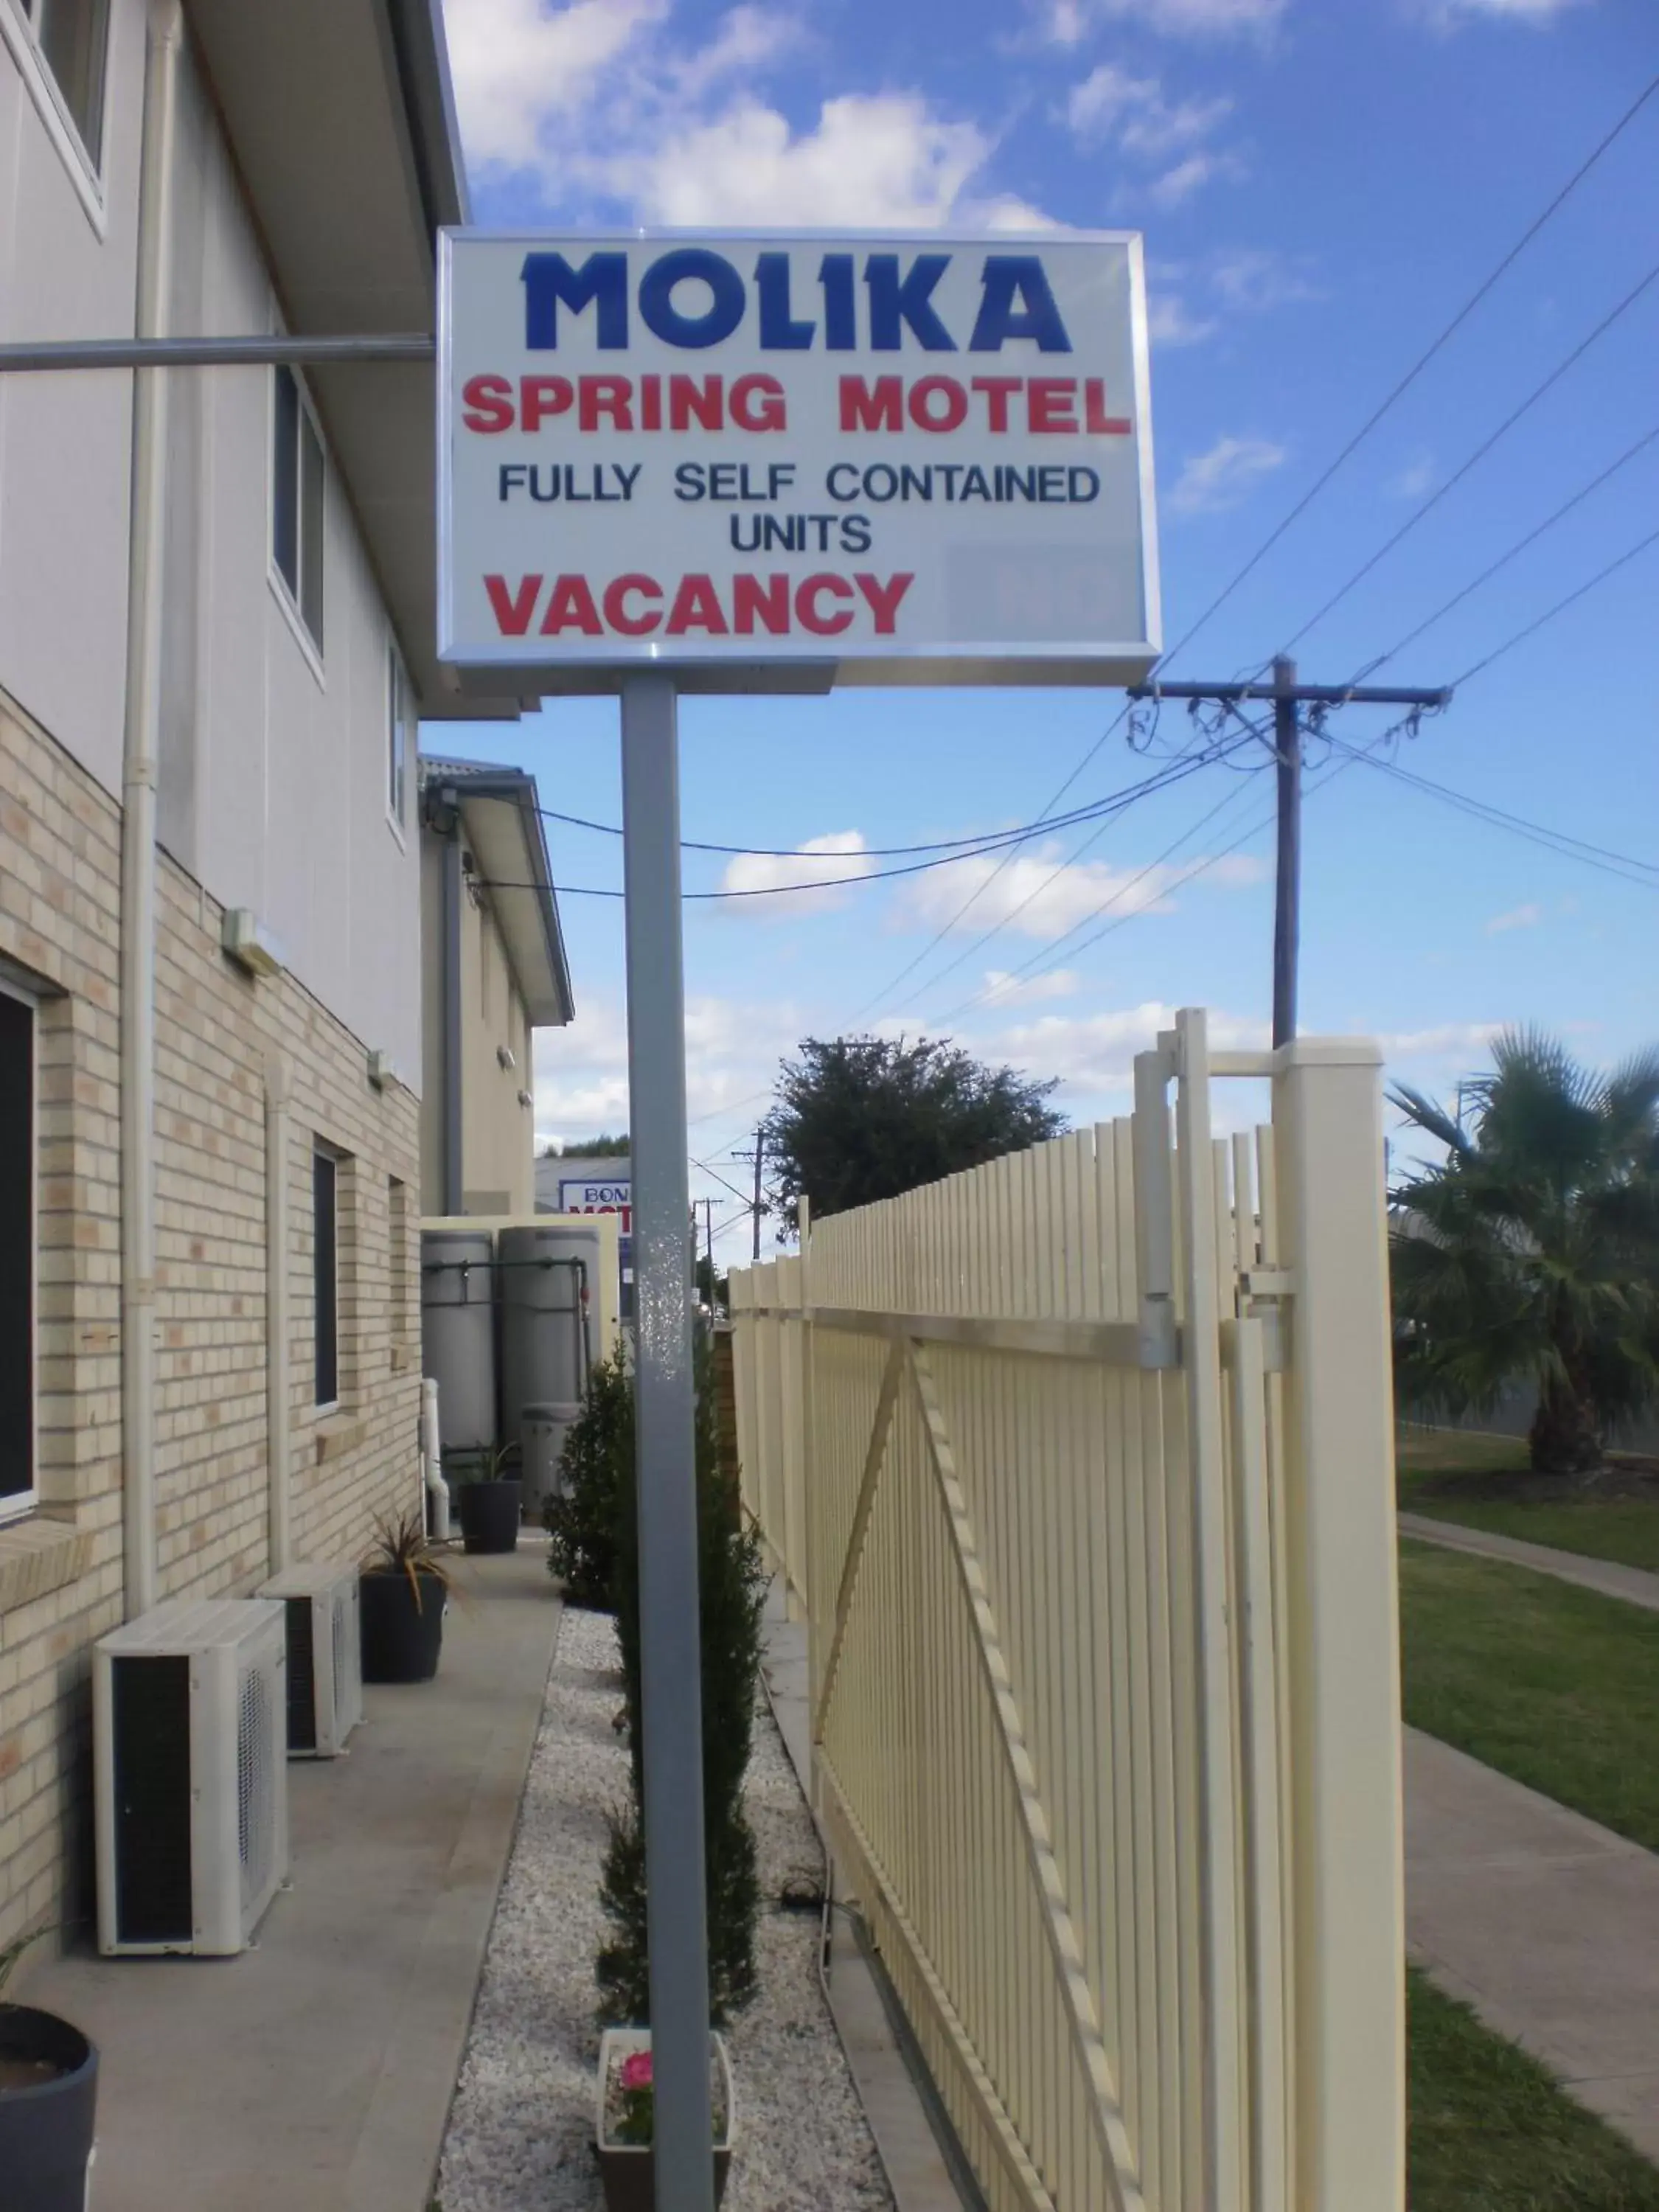 Property building in Molika Springs Motel